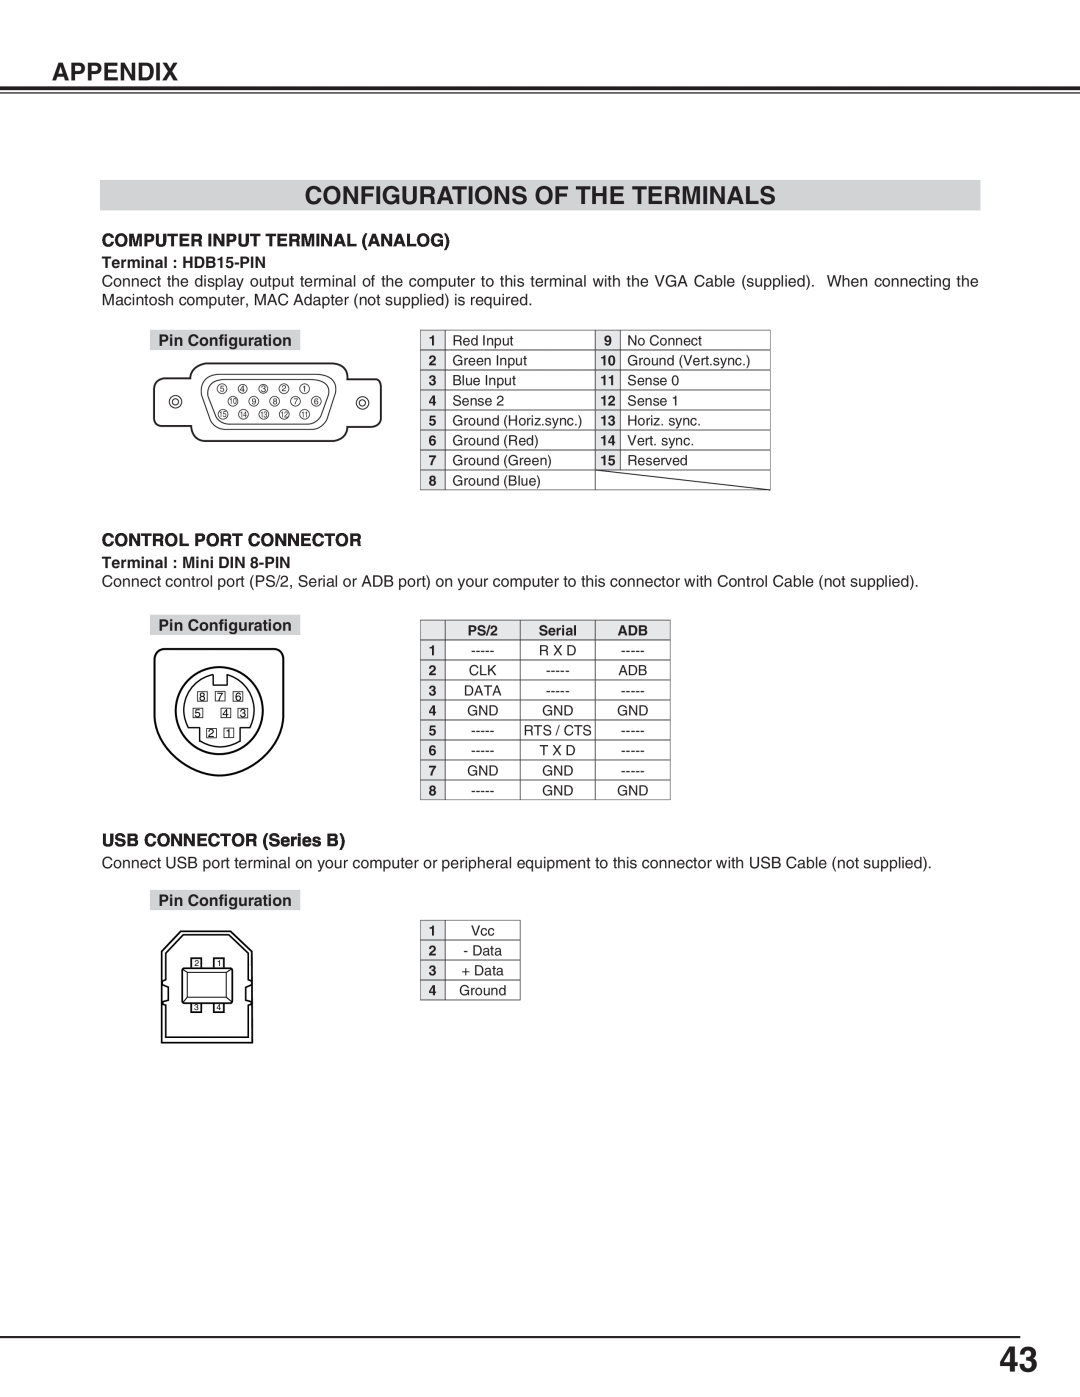 Canon LV-X2 Configurations Of The Terminals, Appendix, Terminal HDB15-PIN, Pin Configuration, Terminal Mini DIN 8-PIN 